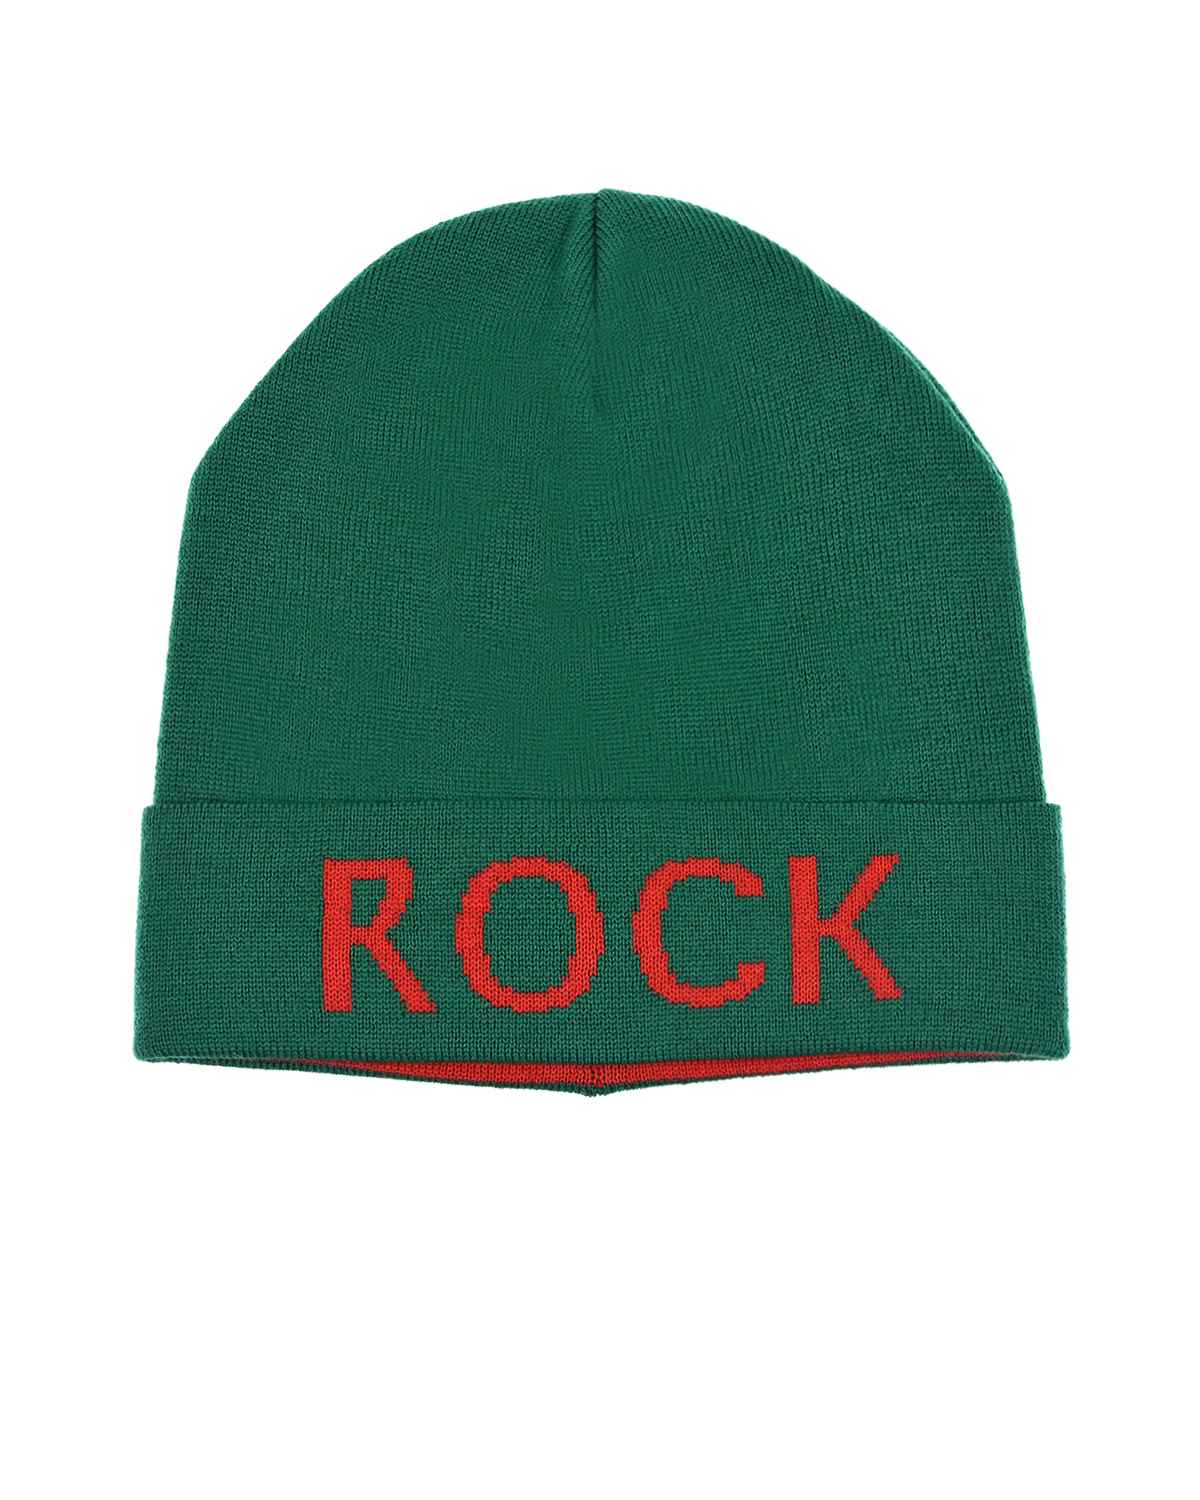 Зеленая шапка с надписью "Rock" Catya детская, размер 55, цвет зеленый - фото 1